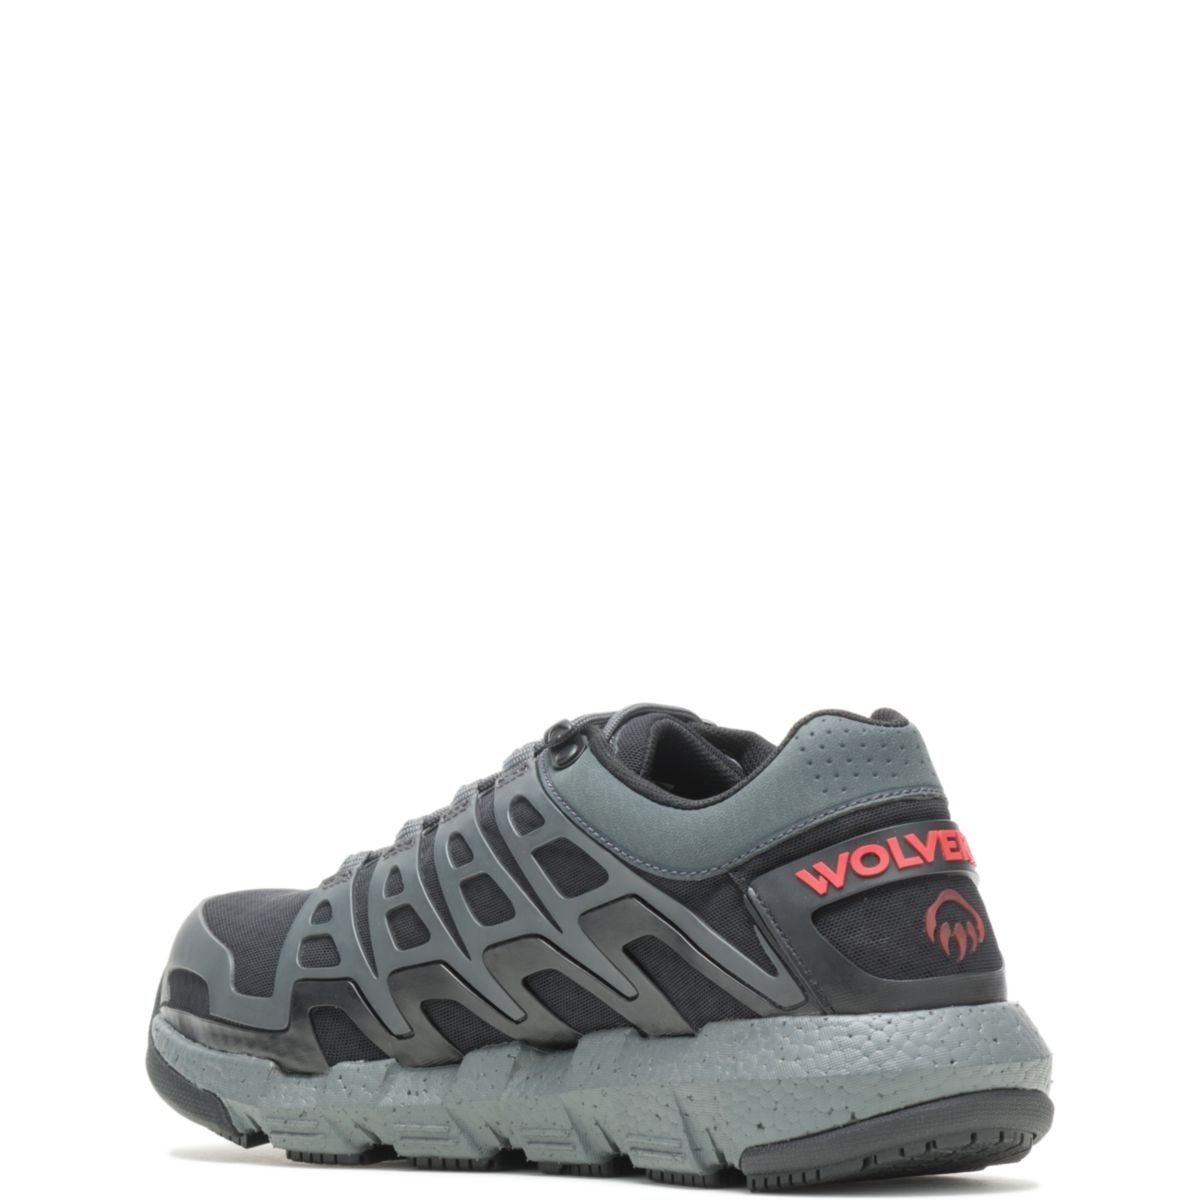 WOLVERINE Men's Rev Vent UltraSpringâ¢ DuraShocksÂ® CarbonMAXÂ® Composite Toe Work Shoe Charcoal - W211016 CHARCOAL - CHARCOAL, 10 X-Wide